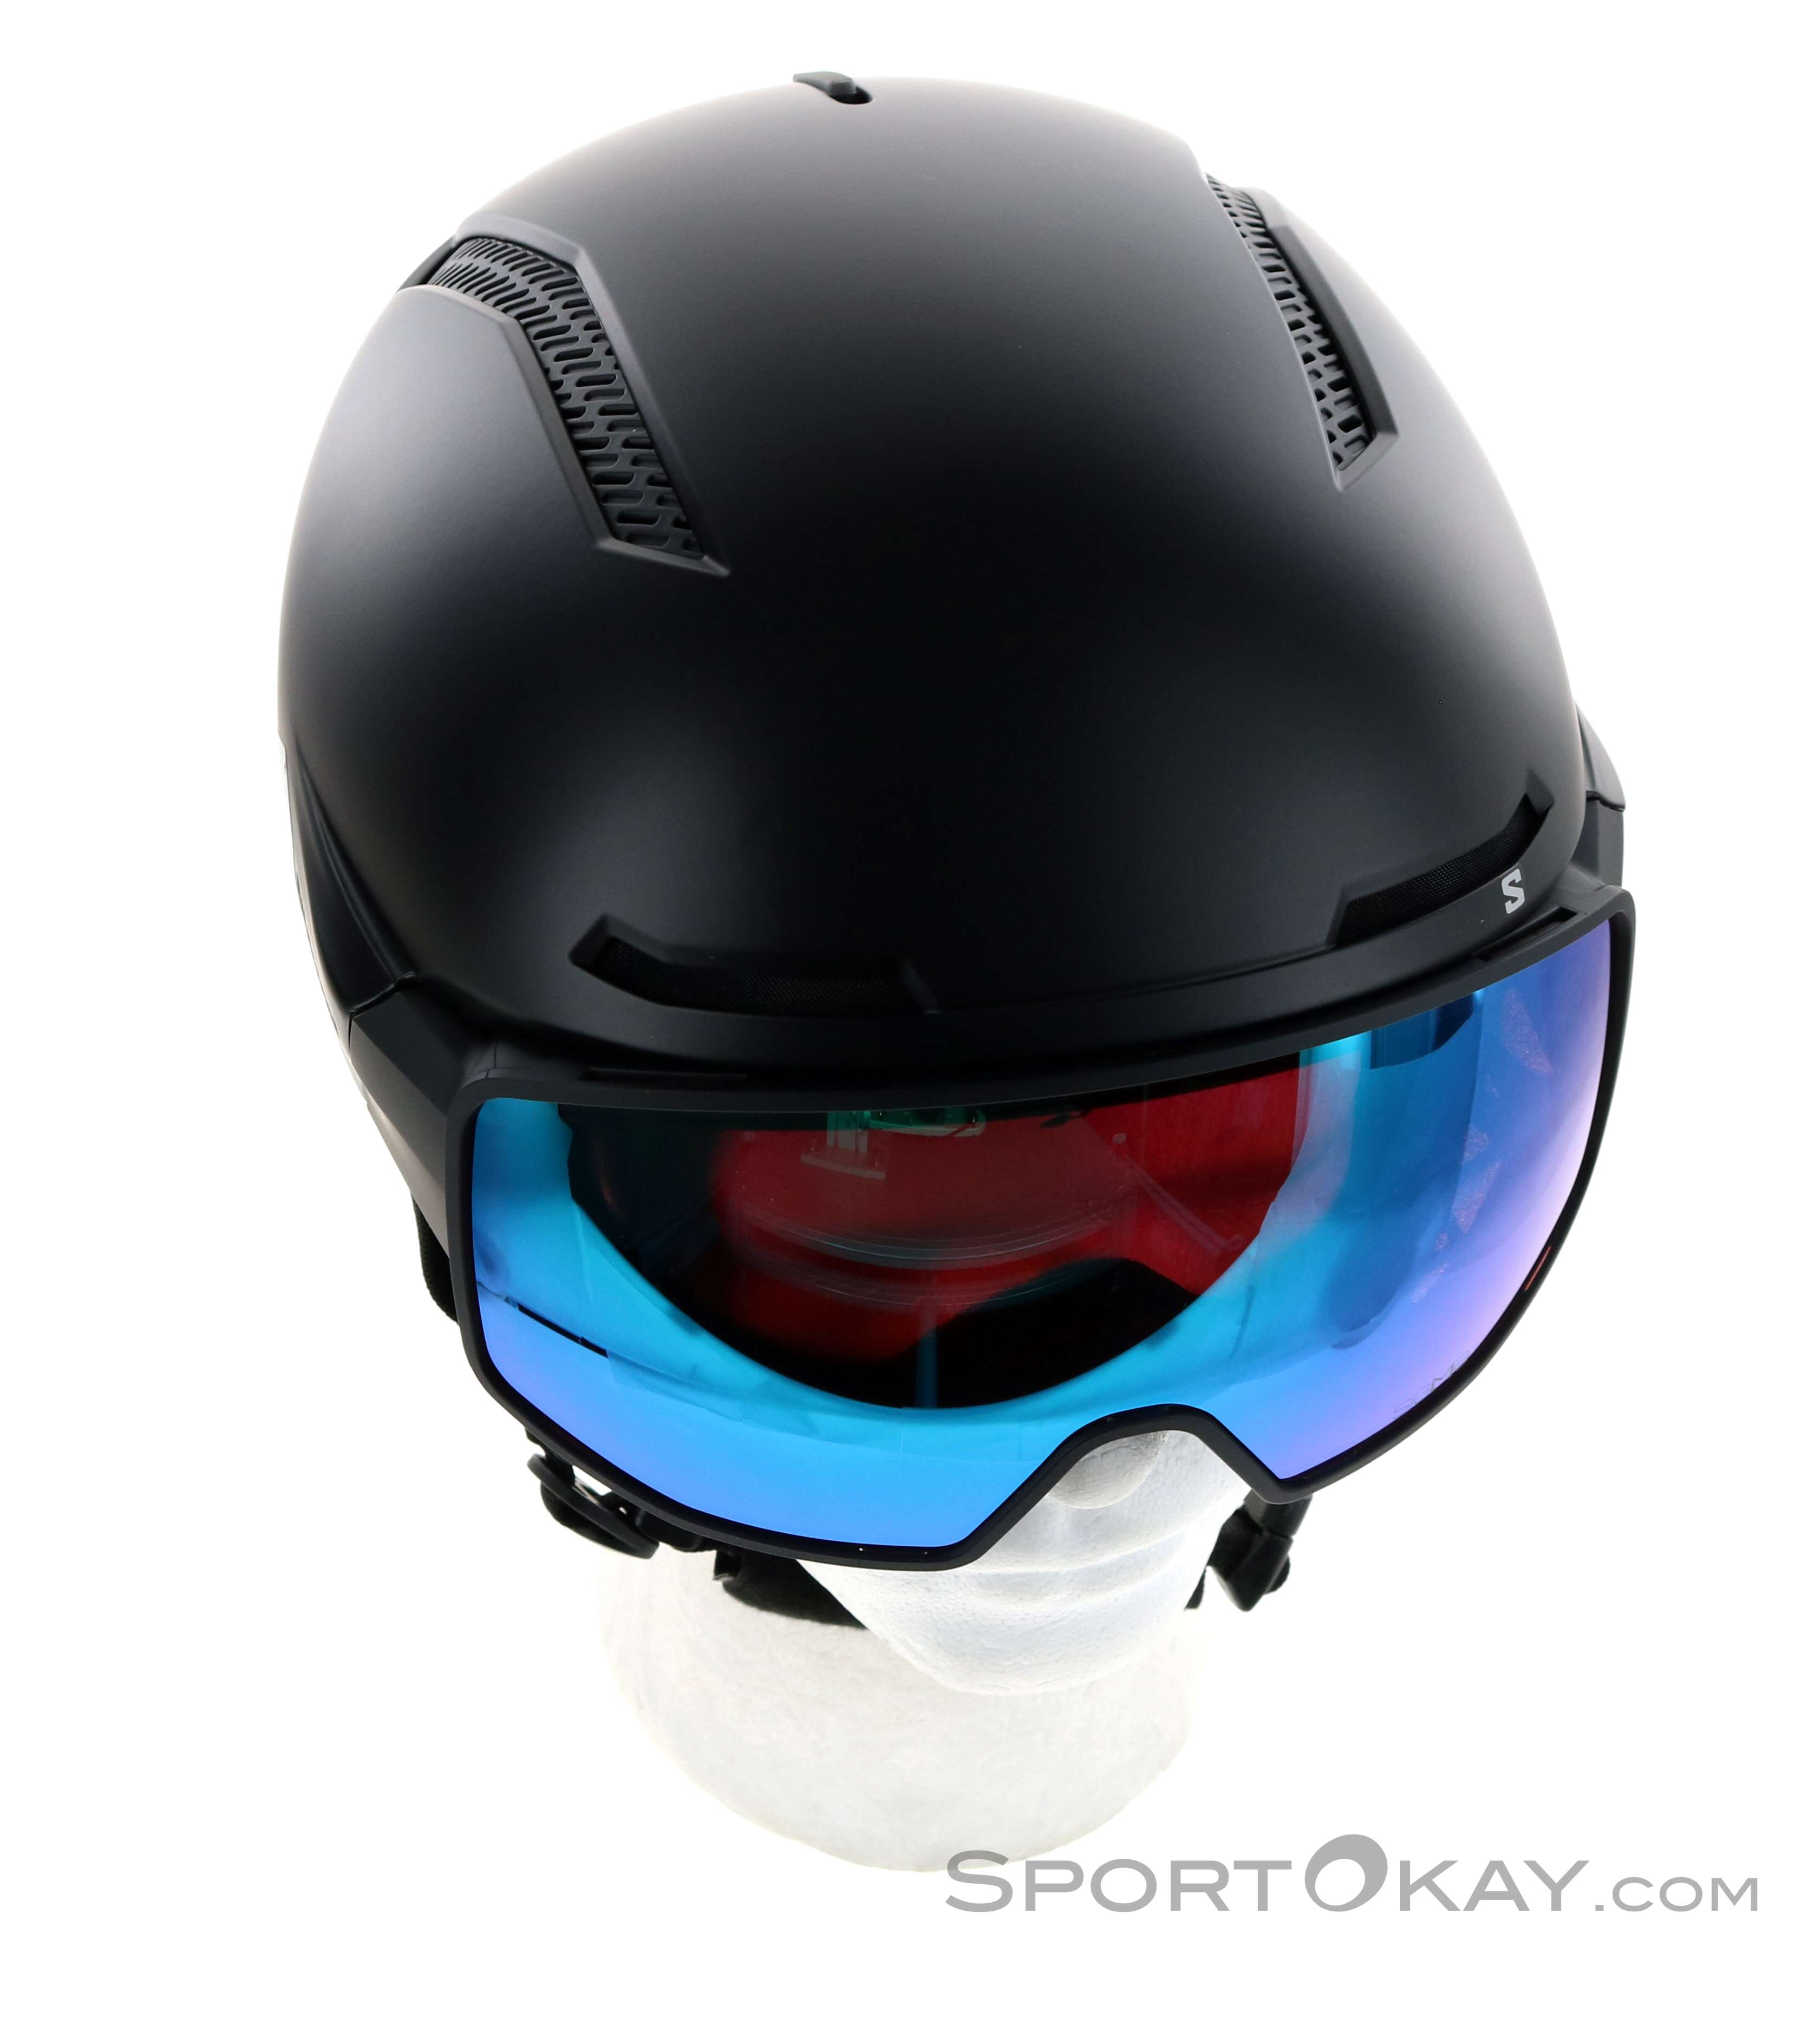 Salomon Driver Pro Sigma Wine Testing Men's ski helmets : Snowleader